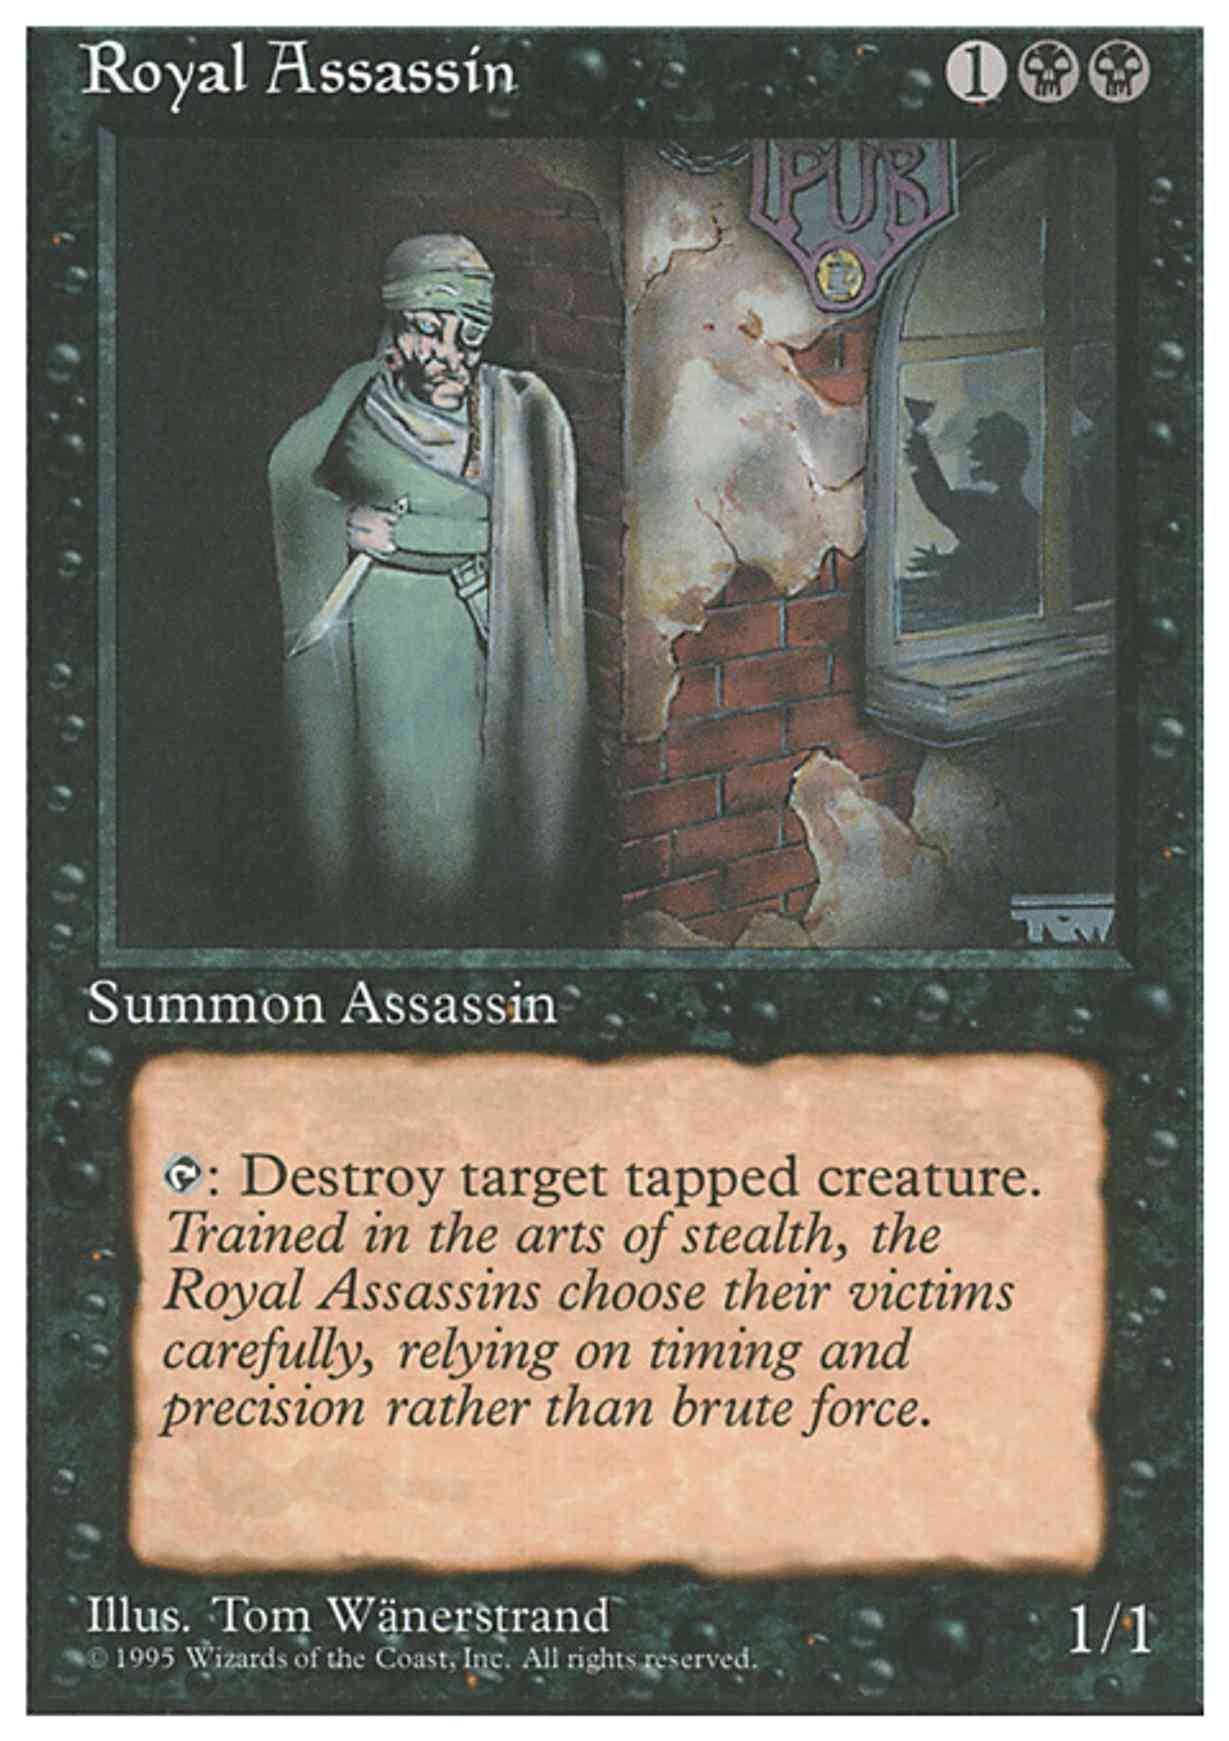 Royal Assassin magic card front